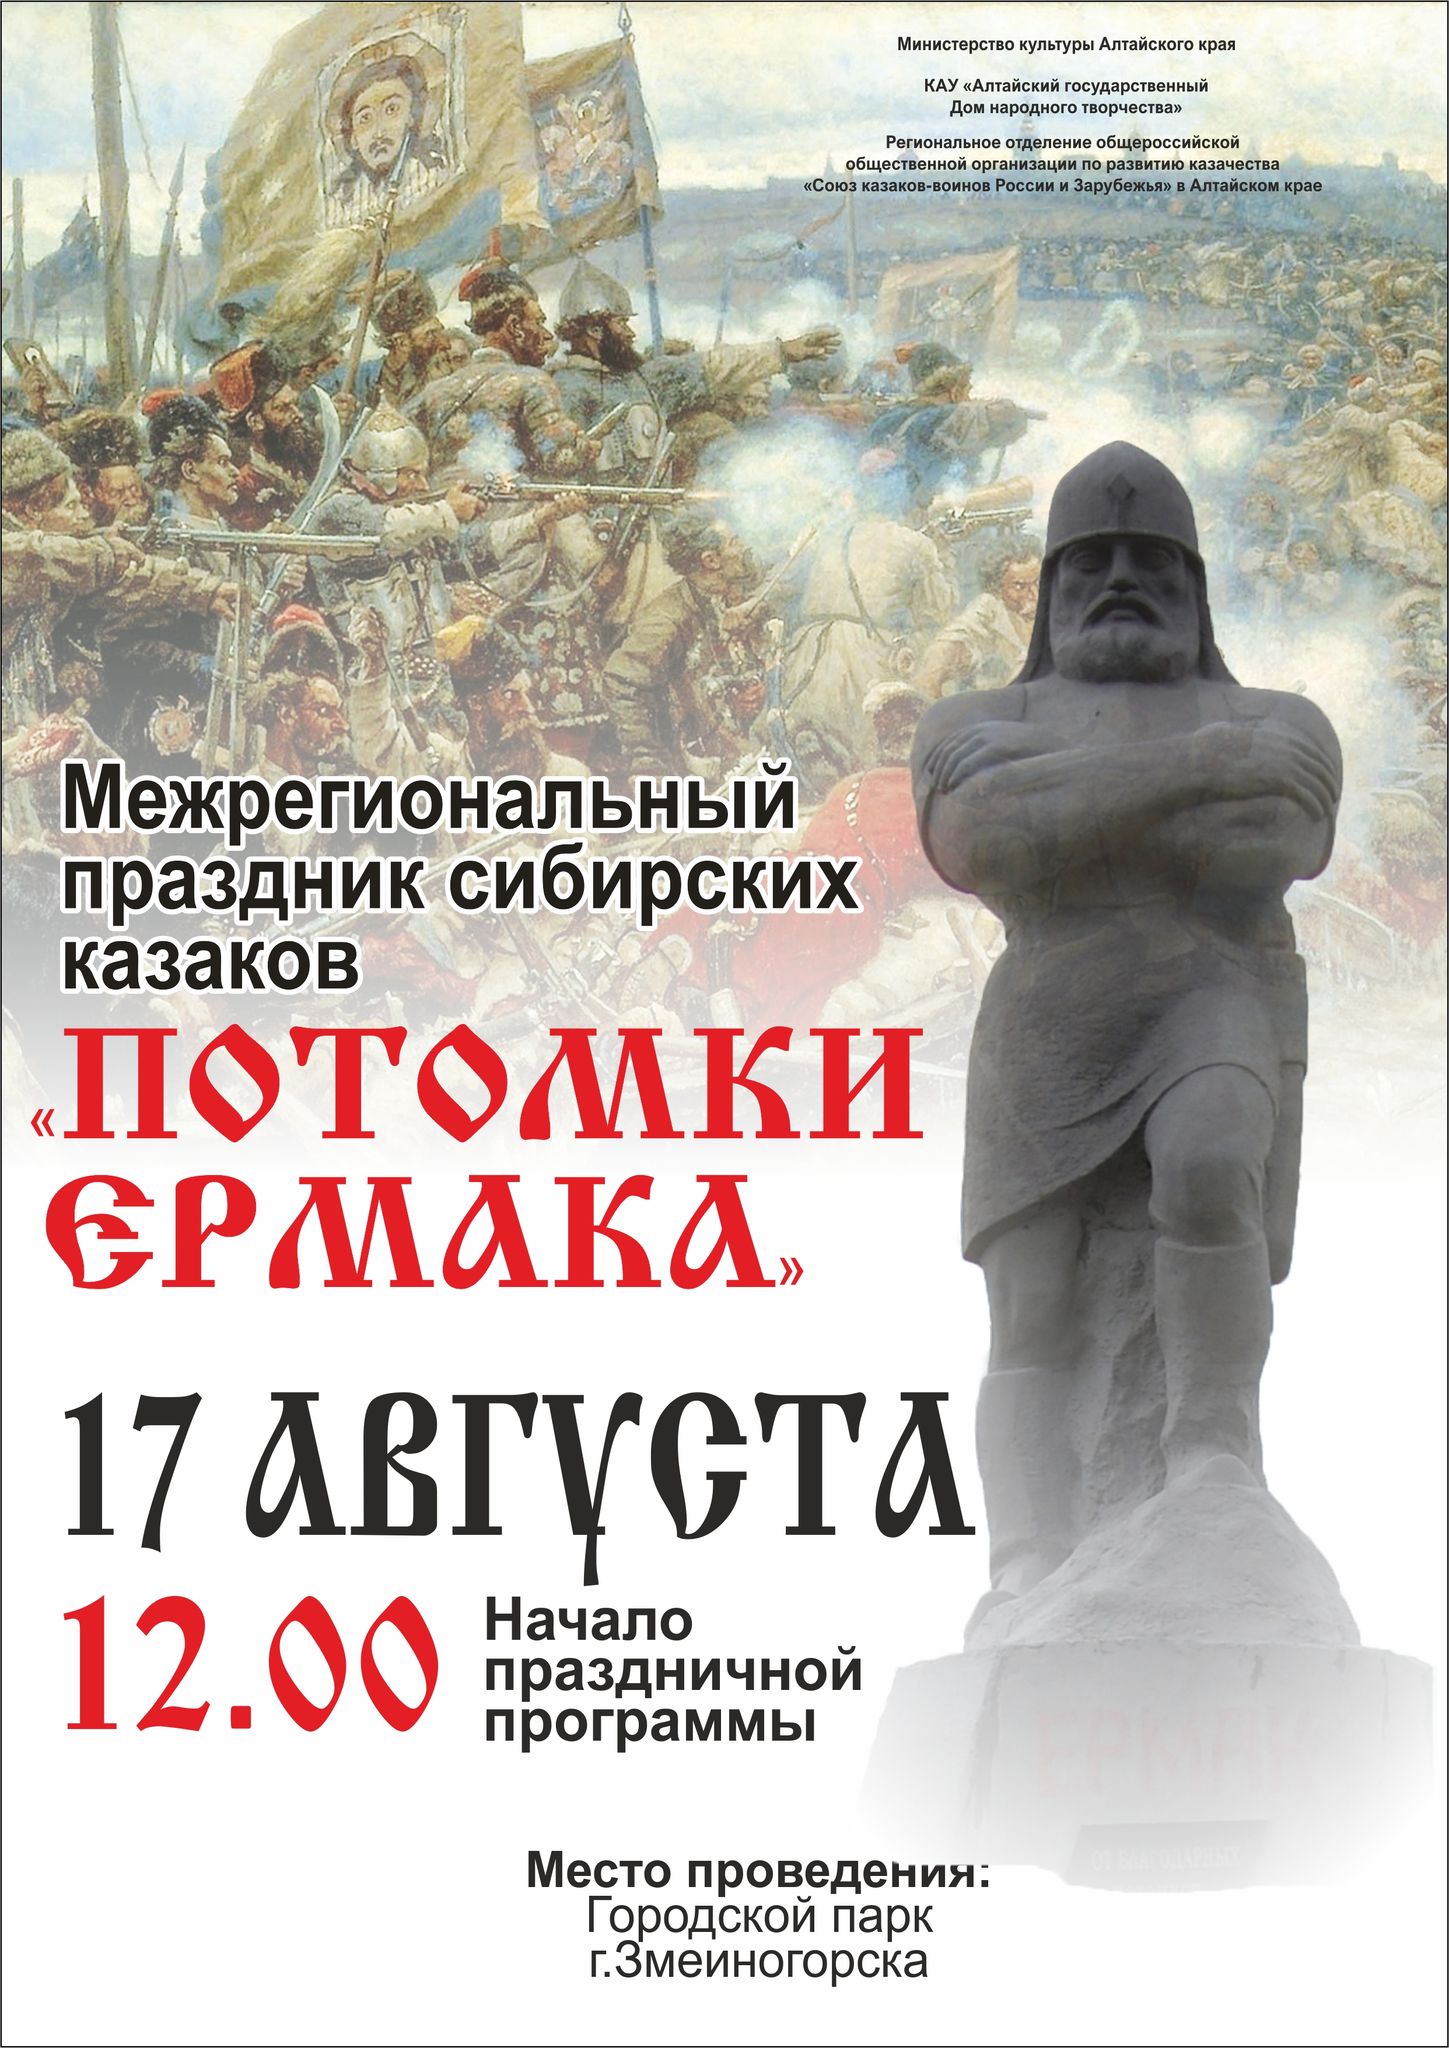 Межрегиональный праздник сибирских казаков «Потомки Ермака» откроется завтра в Змеиногорске